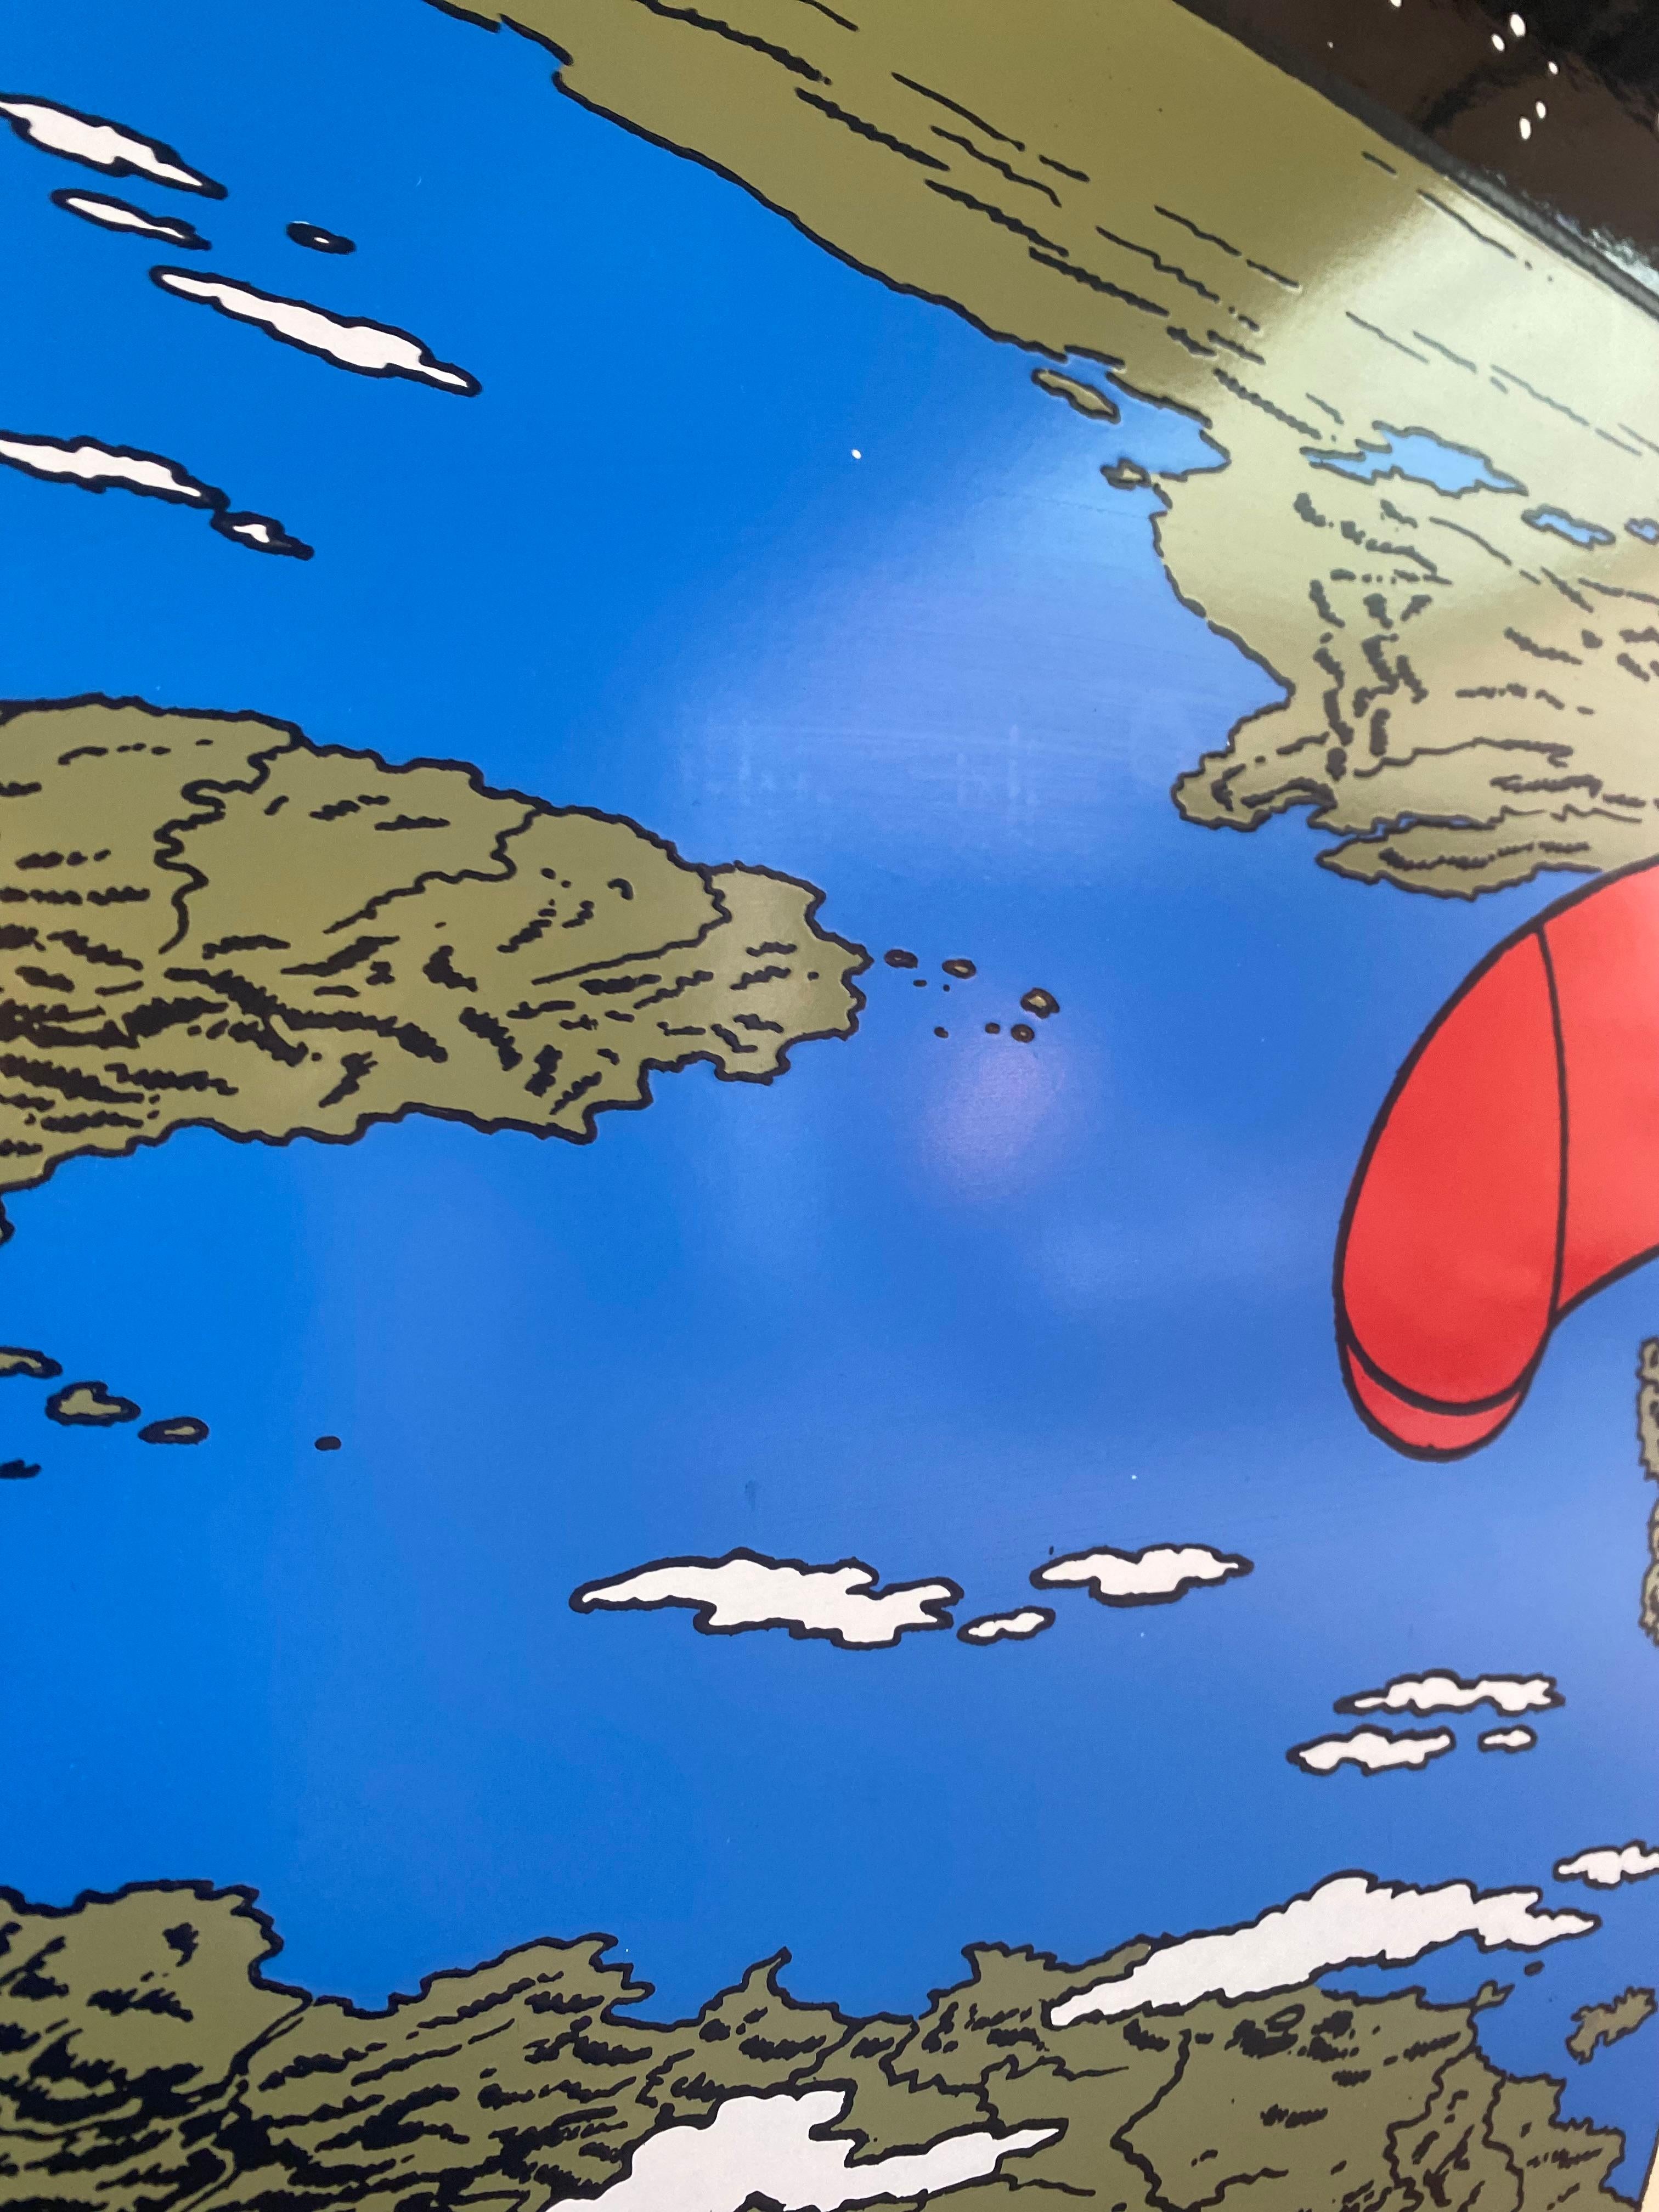 Français Hergé, la fusée qui décolle de la Terre